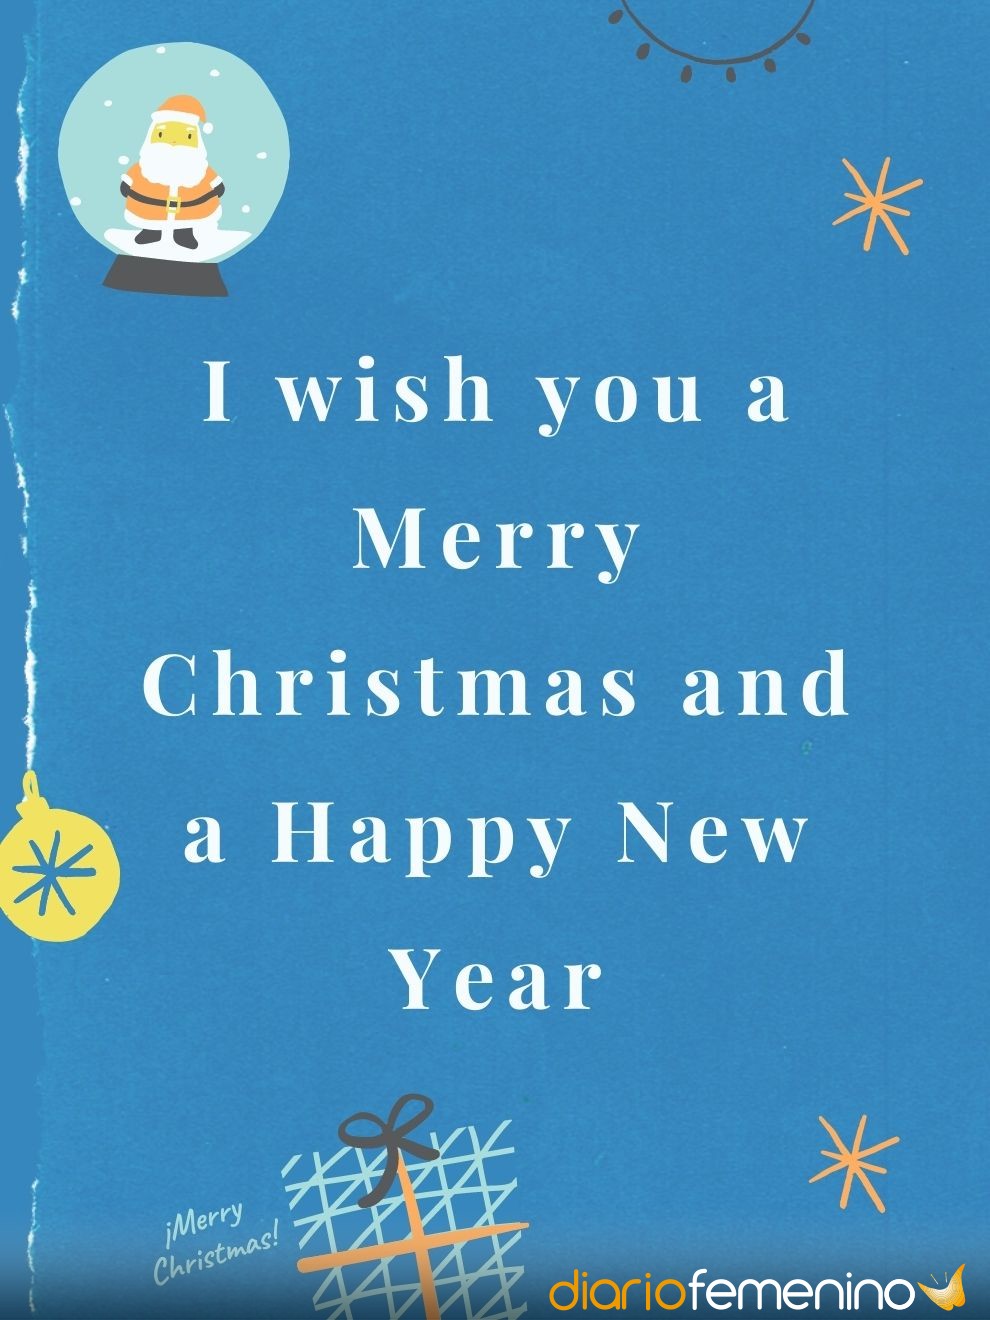 Bella tarjeta de Navidad y Año Nuevo en inglés para enviar